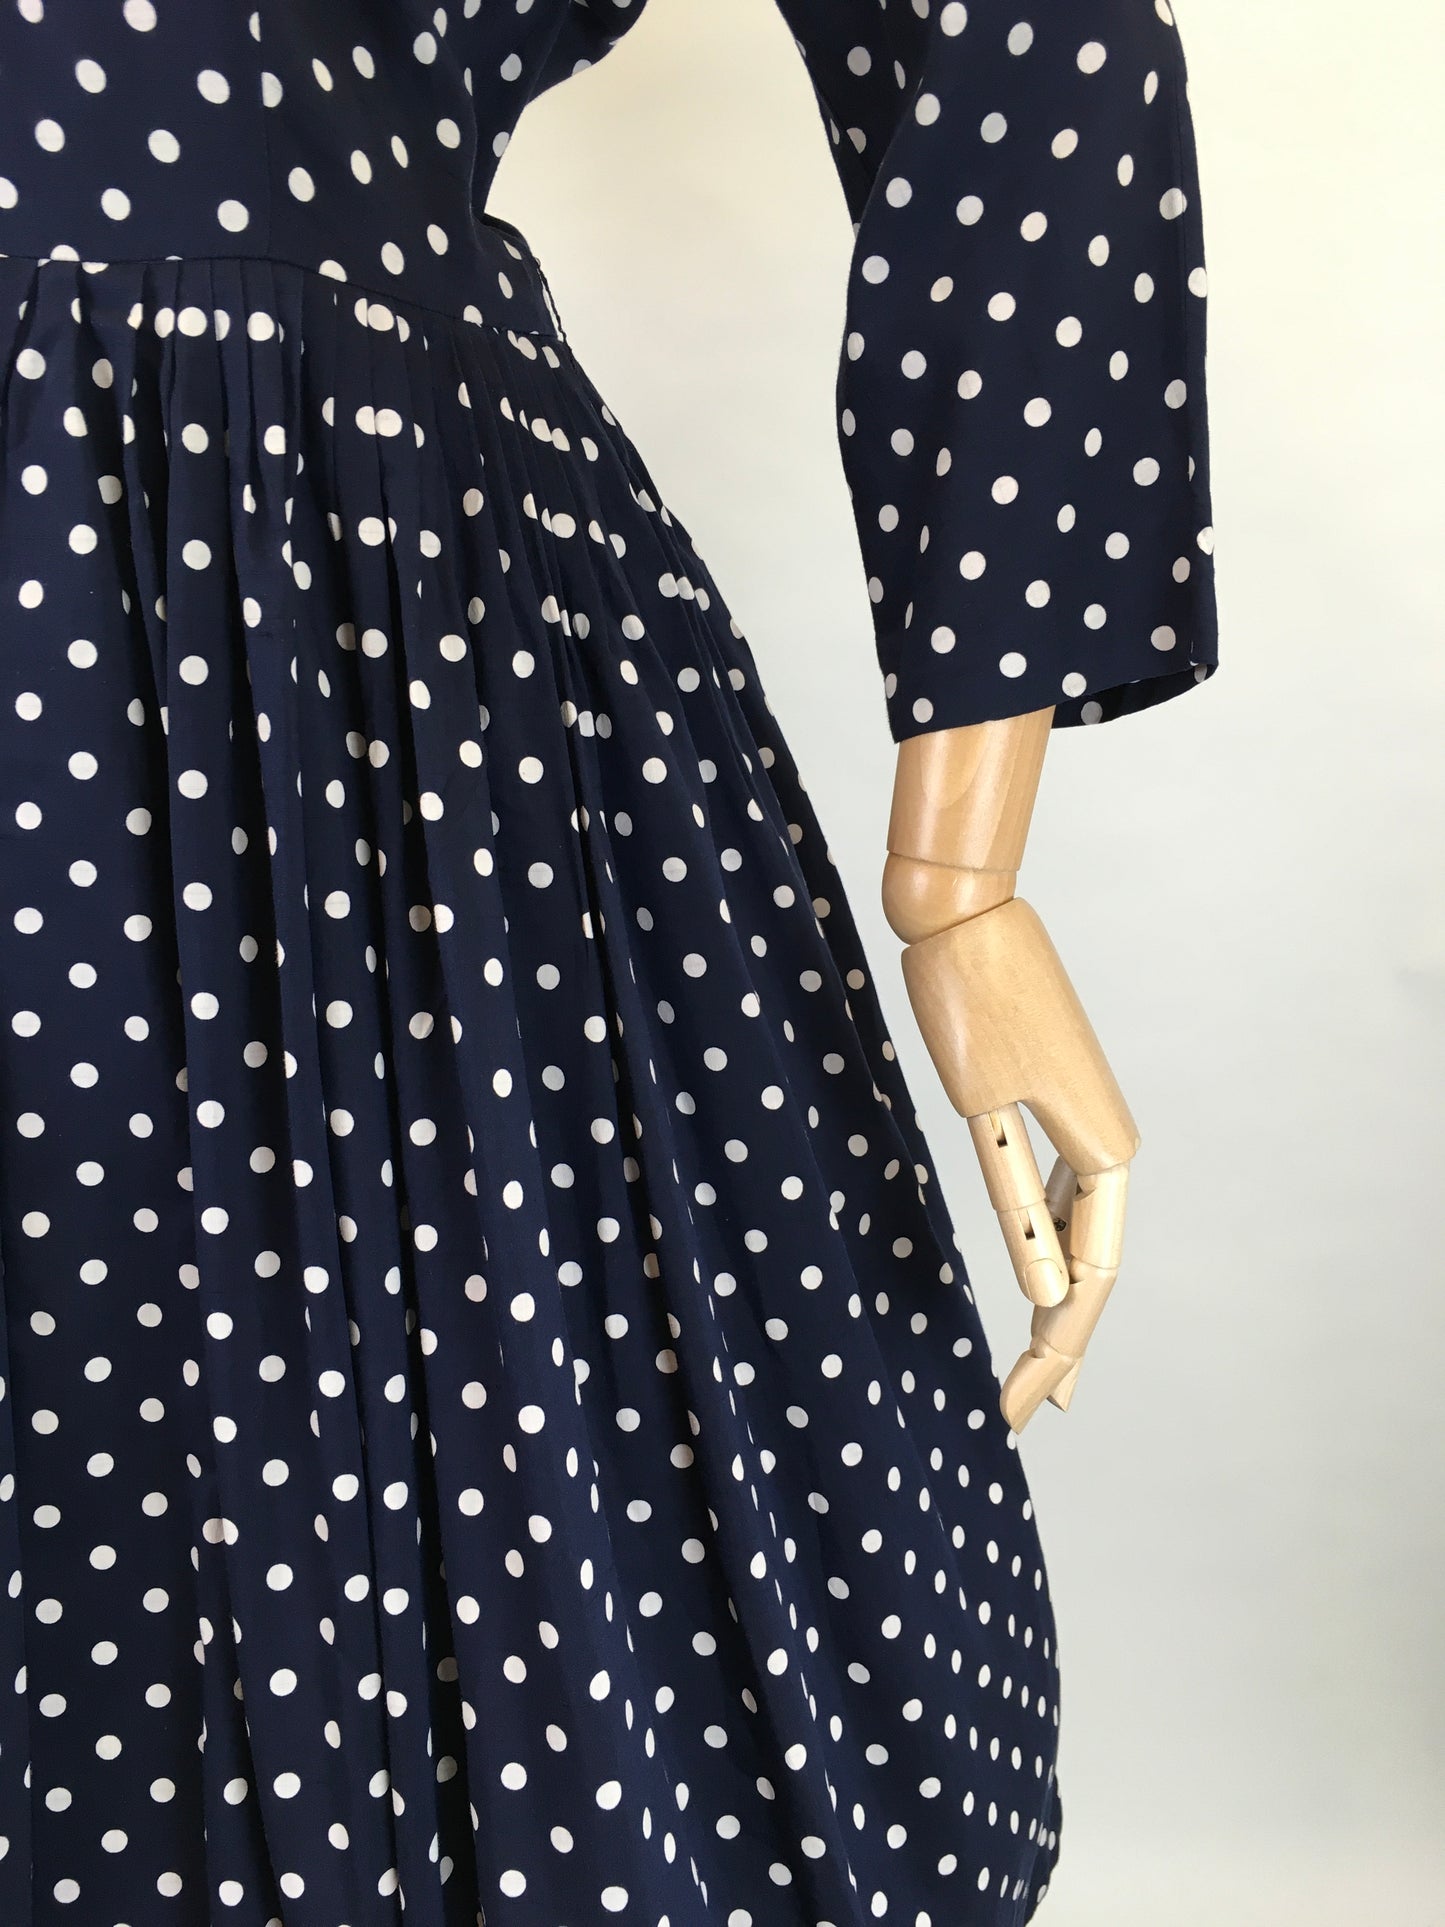 Original 1950s Lightweight Cotton Day Dress - In a Fabulous Deep Navy Polka Dot